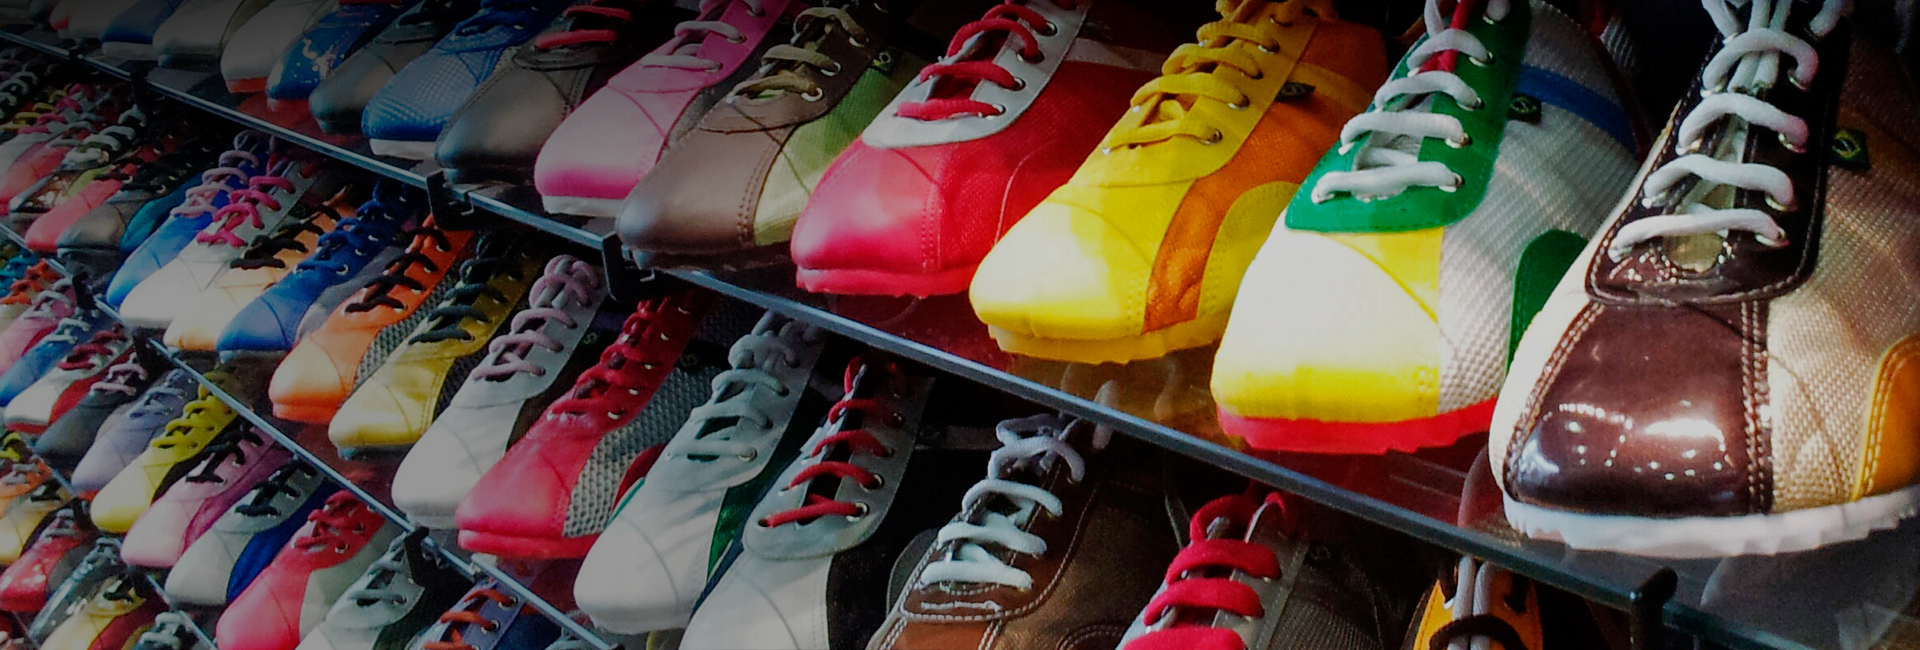 online footwear retailers